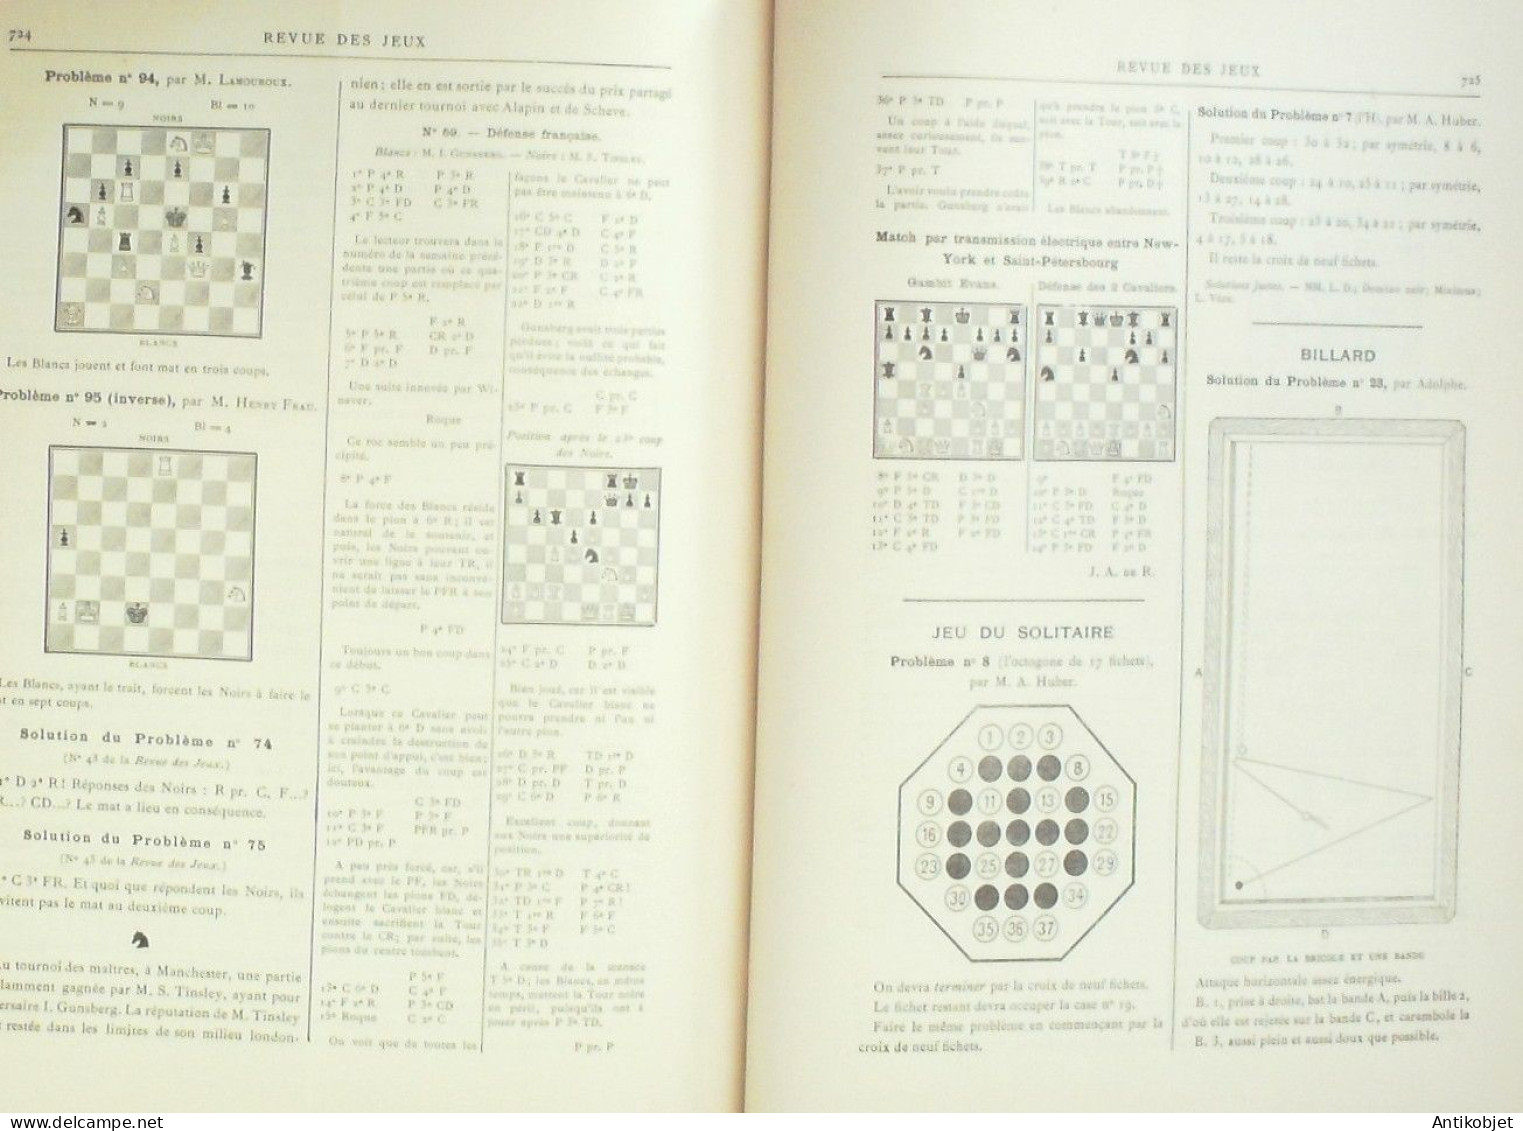 Moniteur des revue de jeux & Matches x 57 revues (1889-90) rare